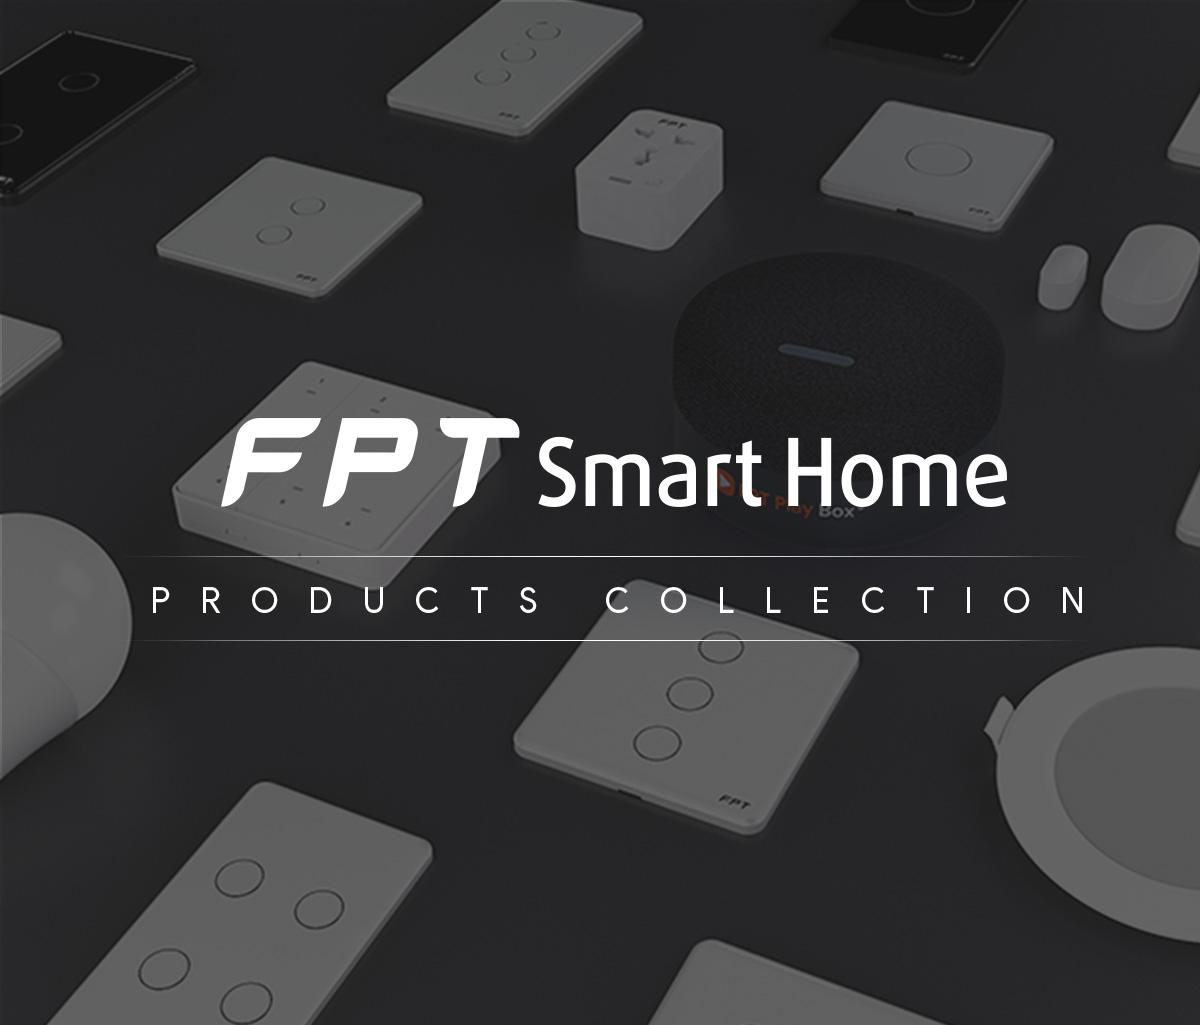 Hướng Dẫn Phần Cài Đặt Chung Cho Tất Cả Sản Phẩm FPT Smart Home